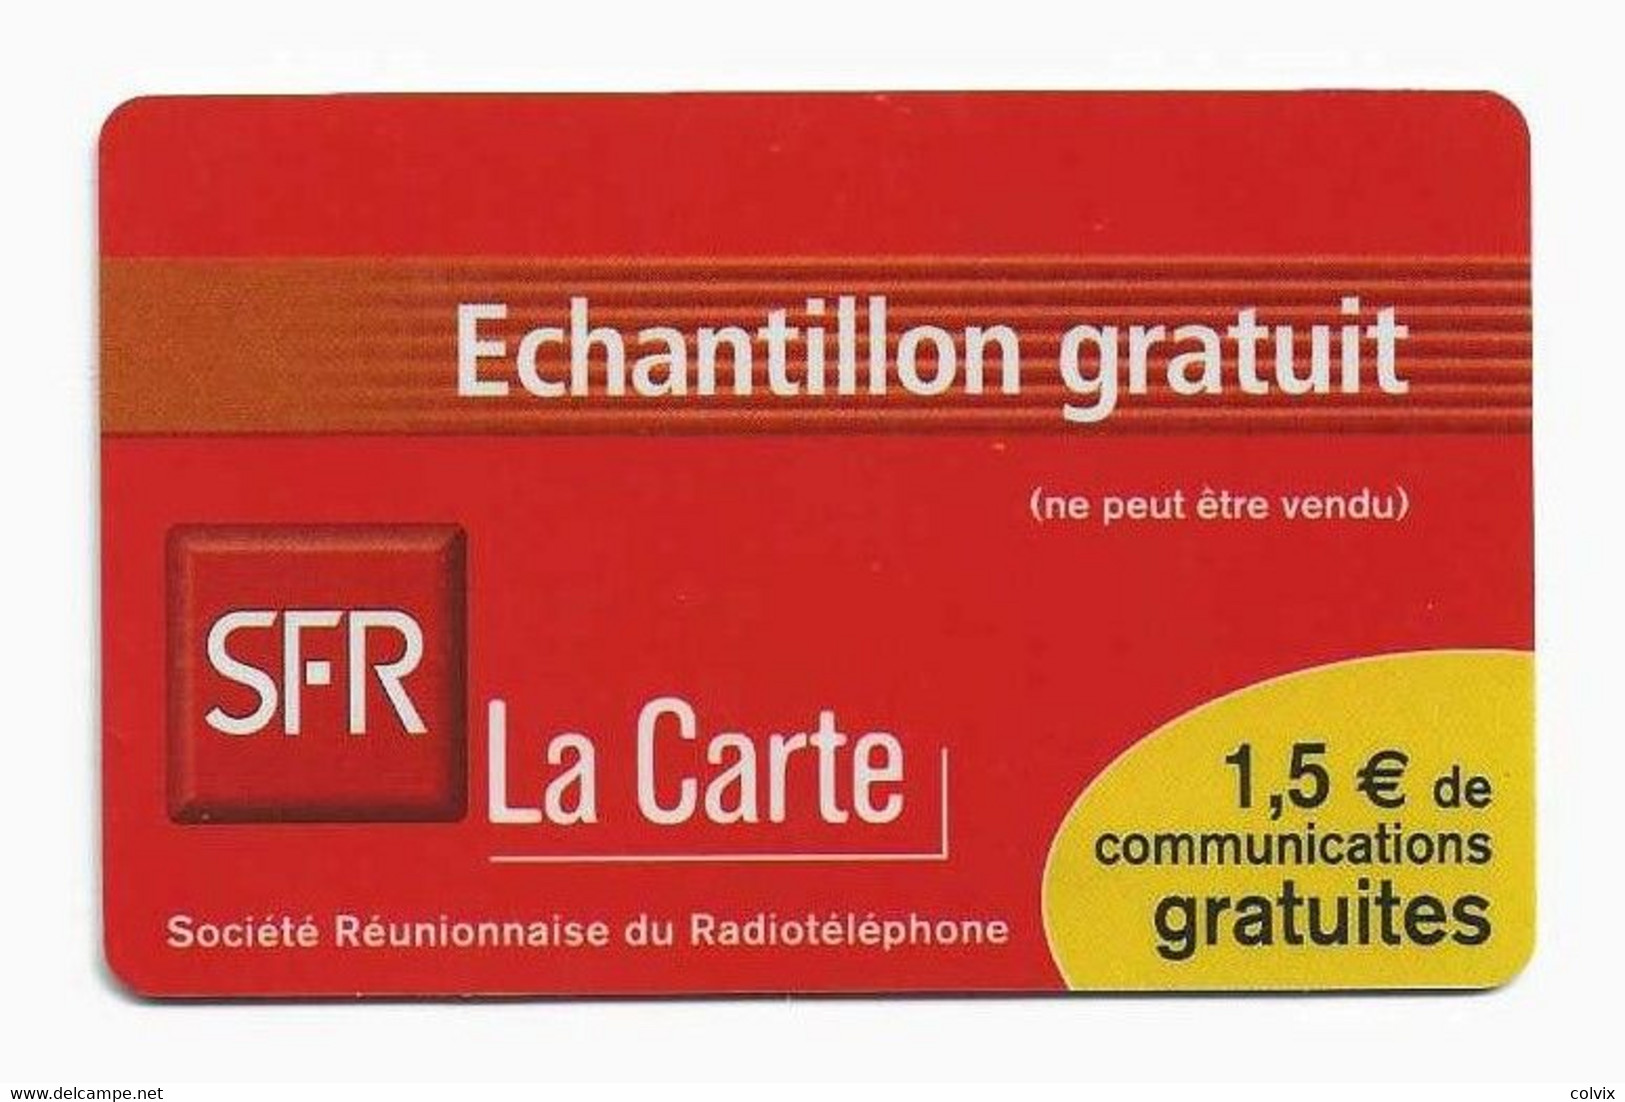 REUNION RECHARGE SFR ECHANTILLON GRATUIT Date 12/03 - Réunion